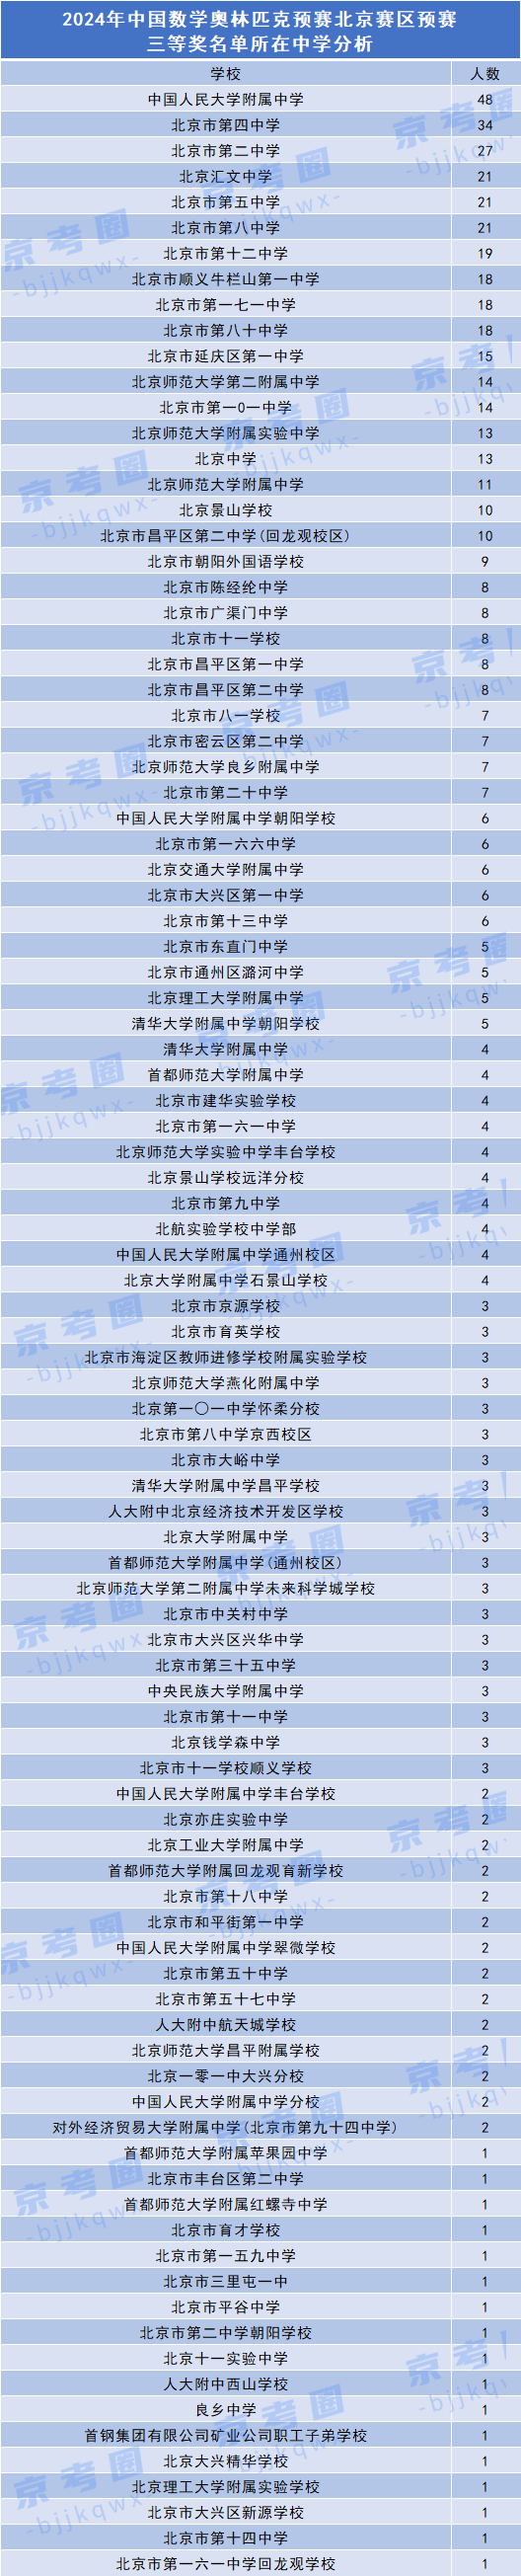 2024数学竞赛预赛北京赛区三等奖获奖名单所在中学分析